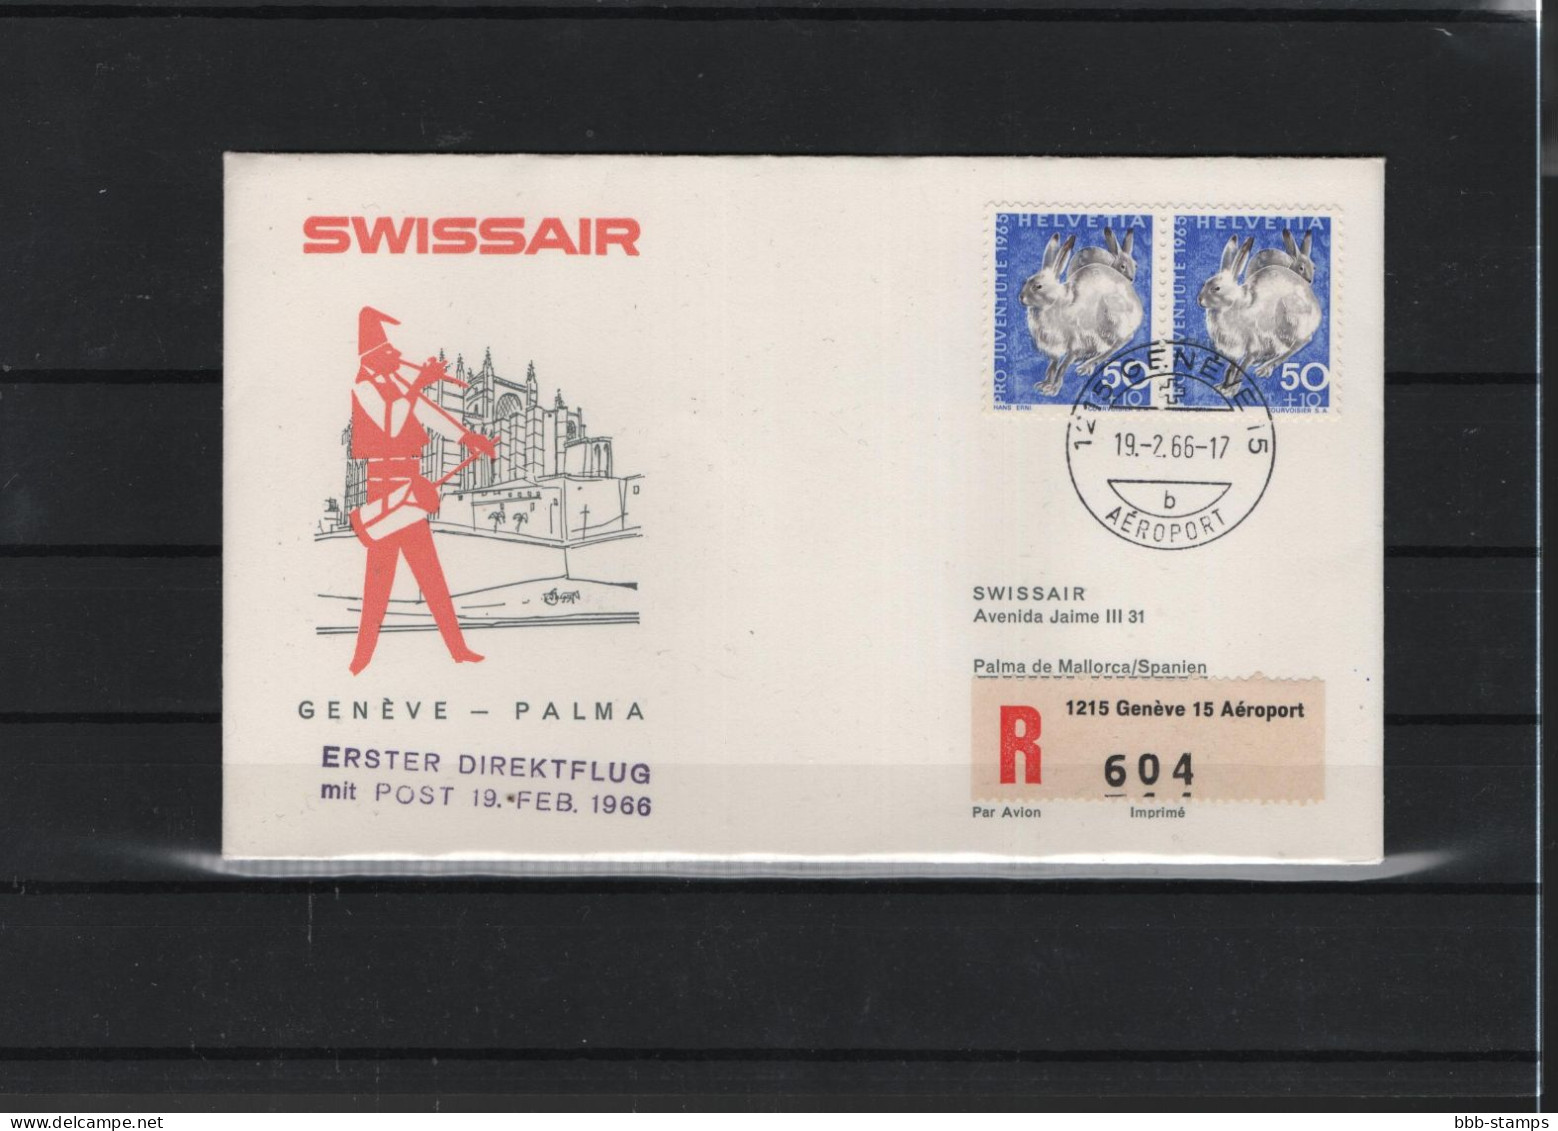 Schweiz Air Mail Swissair  FFC  19.7..1965  Genf - Palma - First Flight Covers